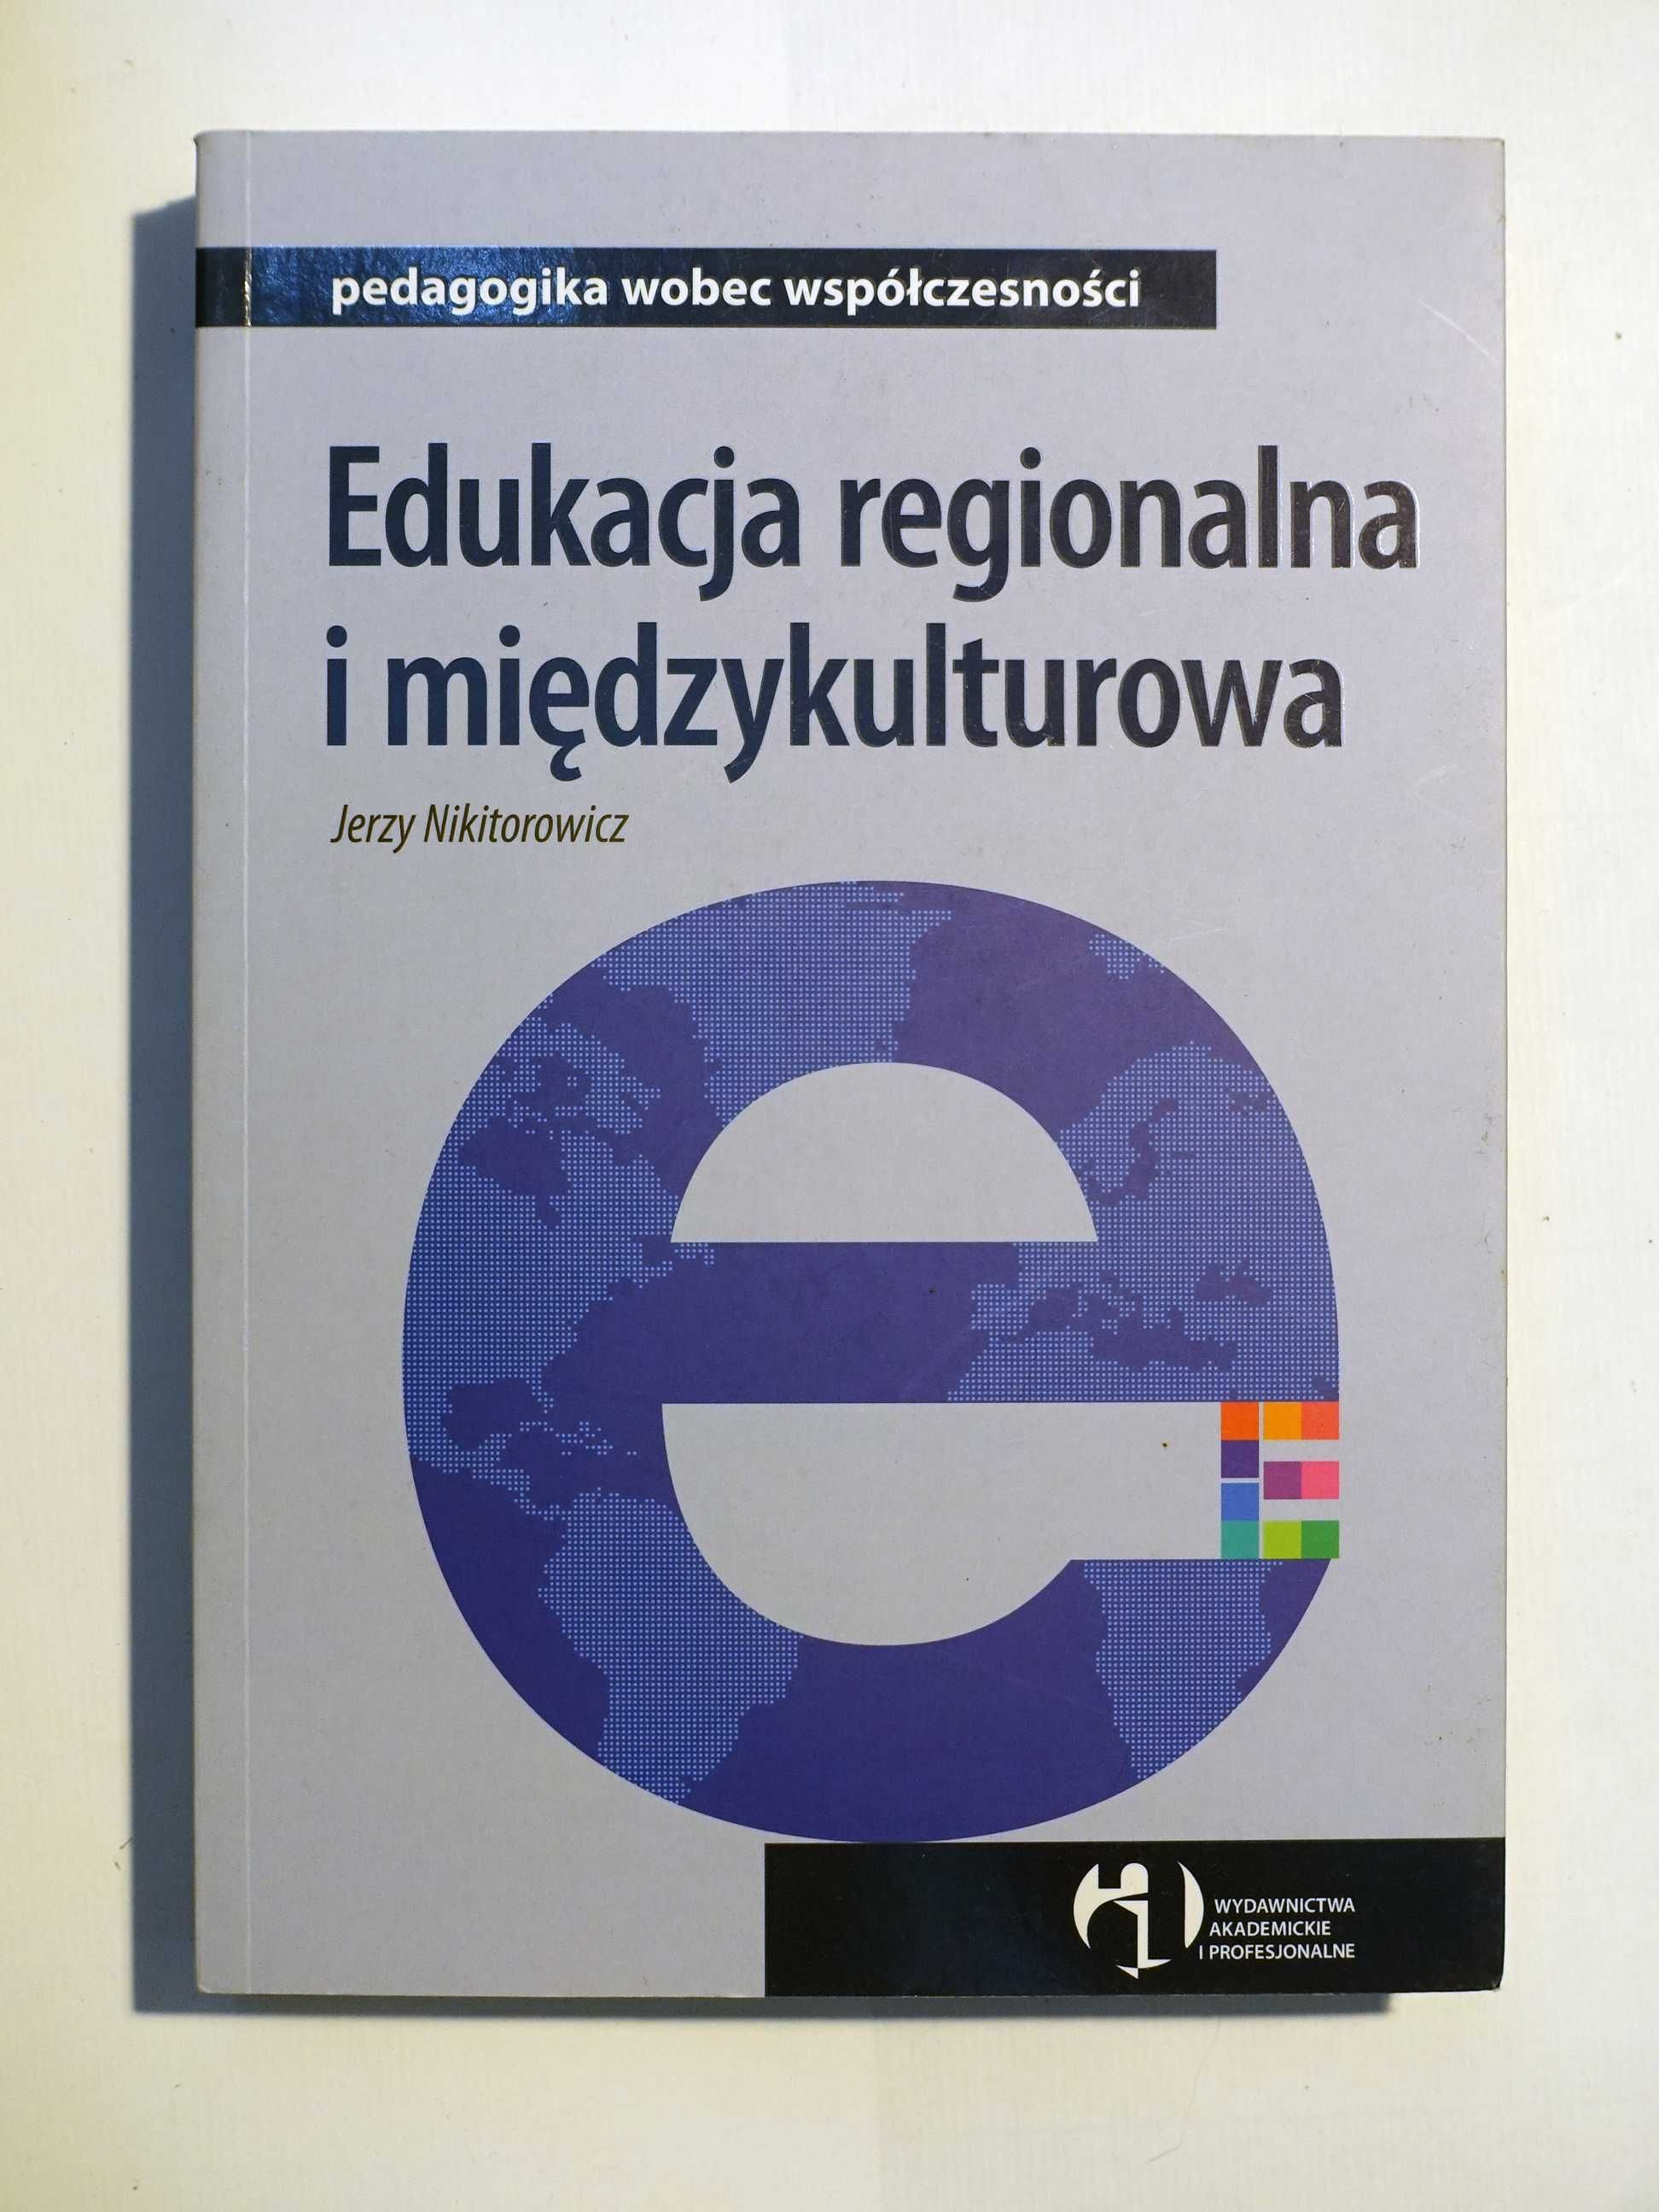 Jerzy Nikitorowicz "Edukacja regionalna i międzykulturowa"